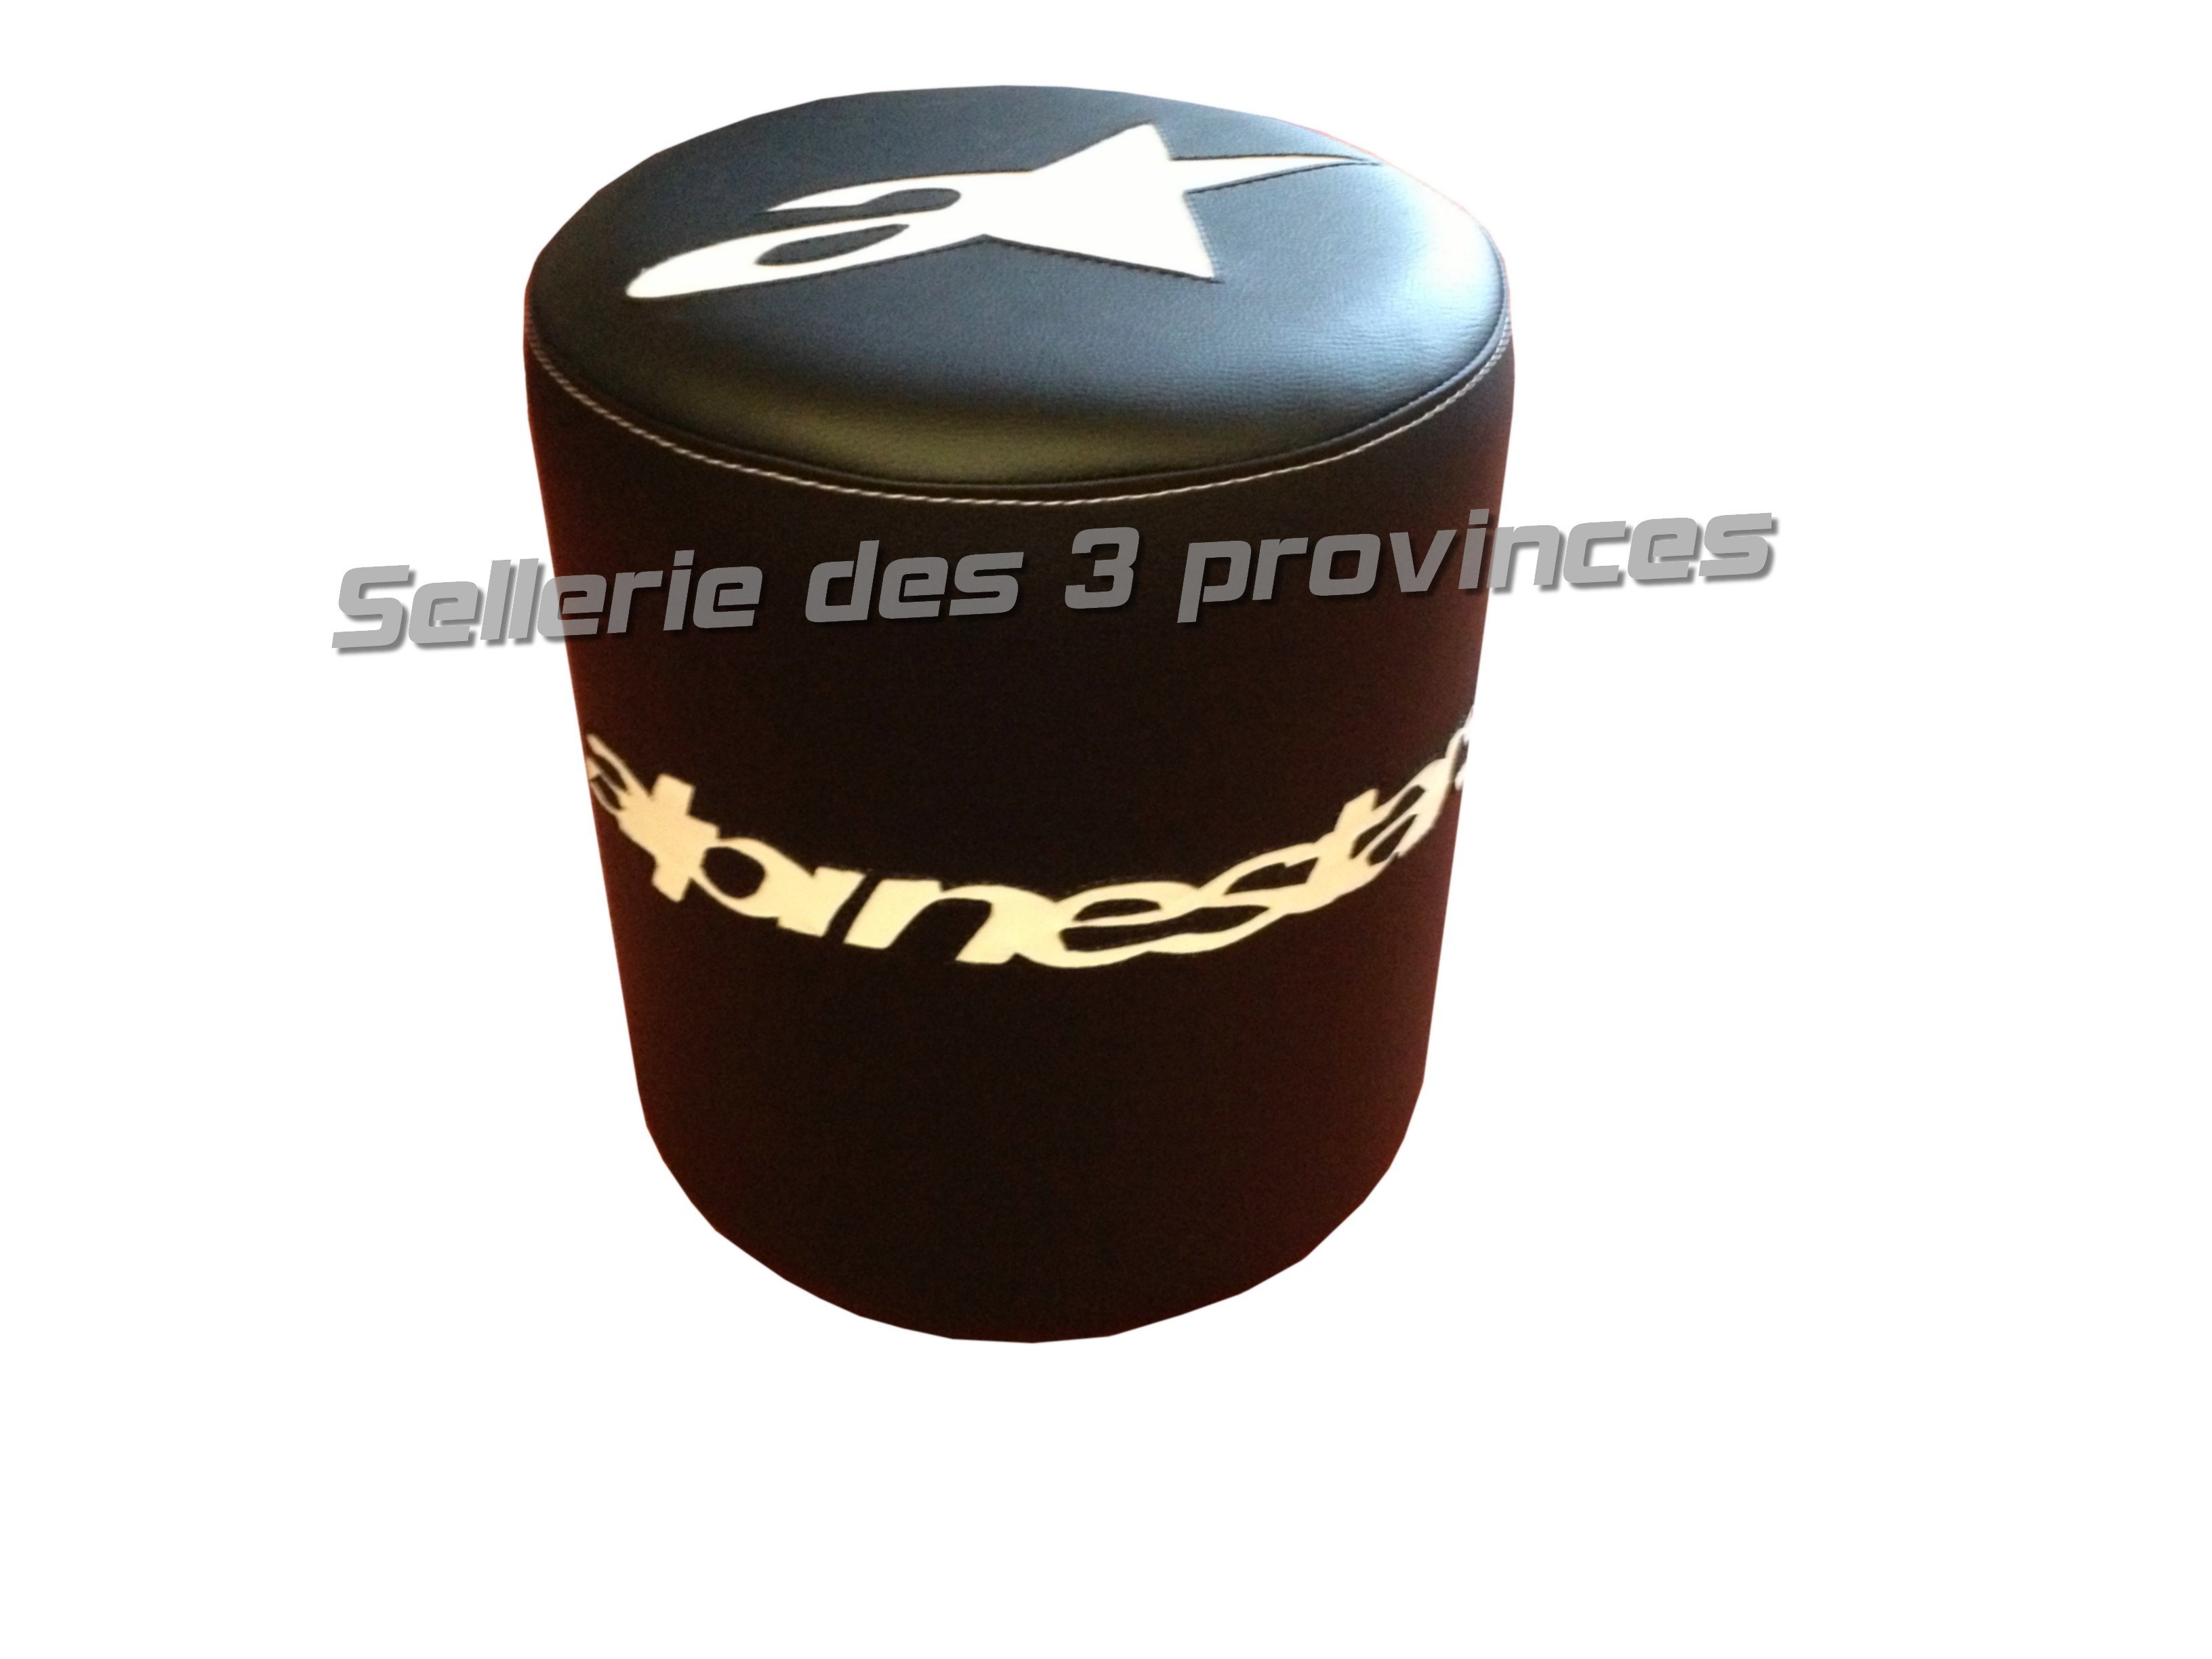 Casquette Yamaha - Sellerie des 3 provinces